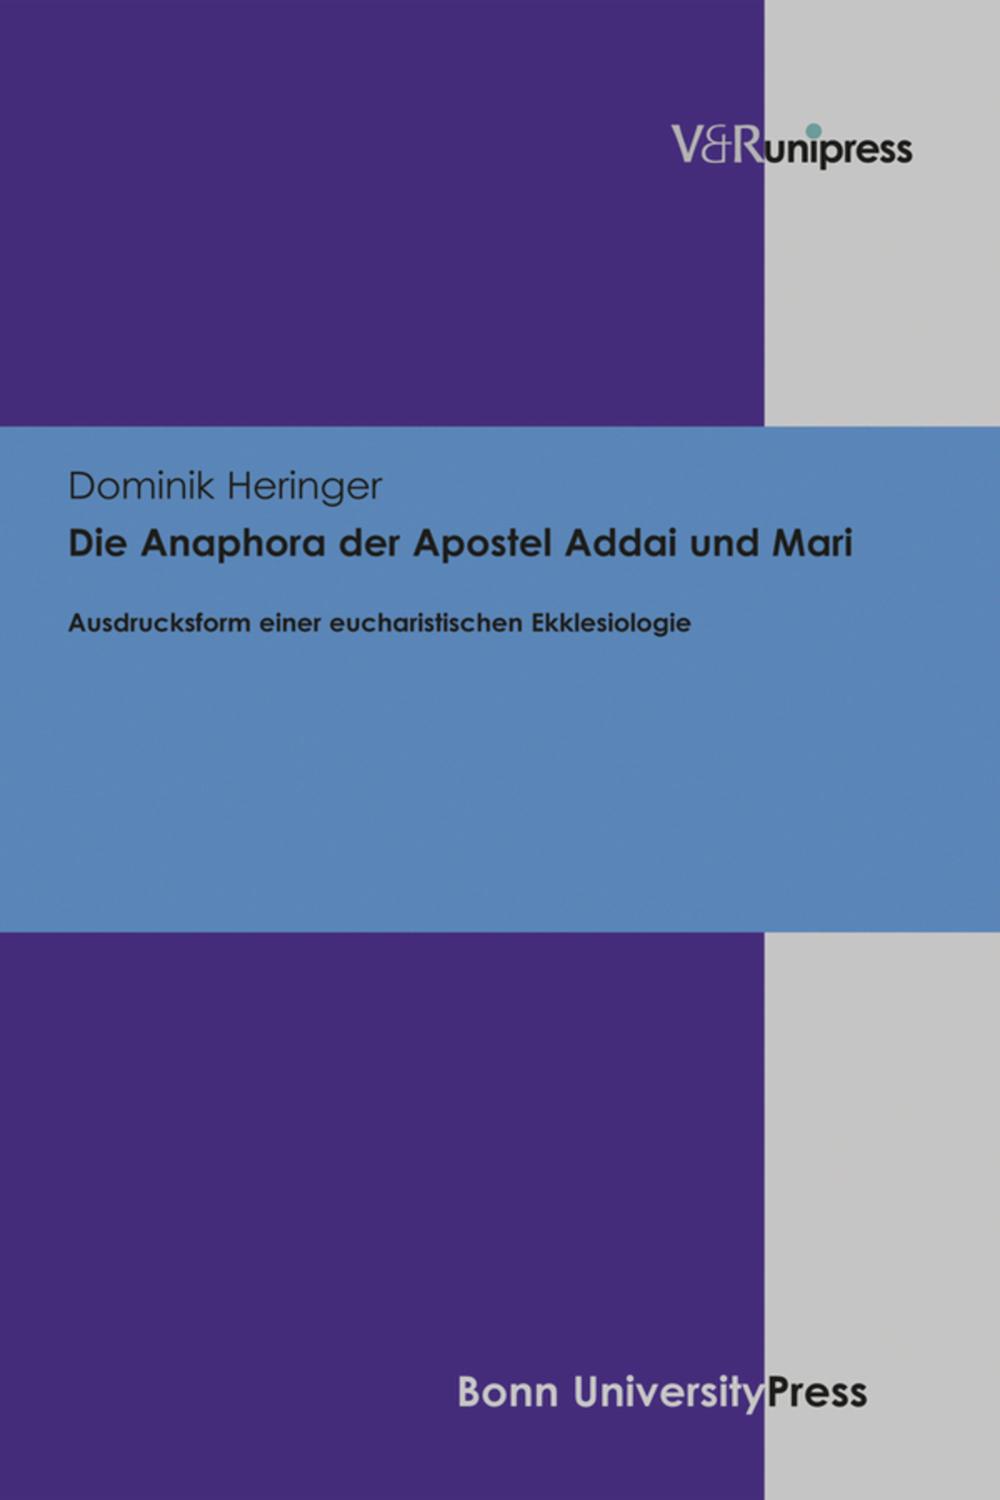 Die Anaphora der Apostel Addai und Mari - Dominik Heringer